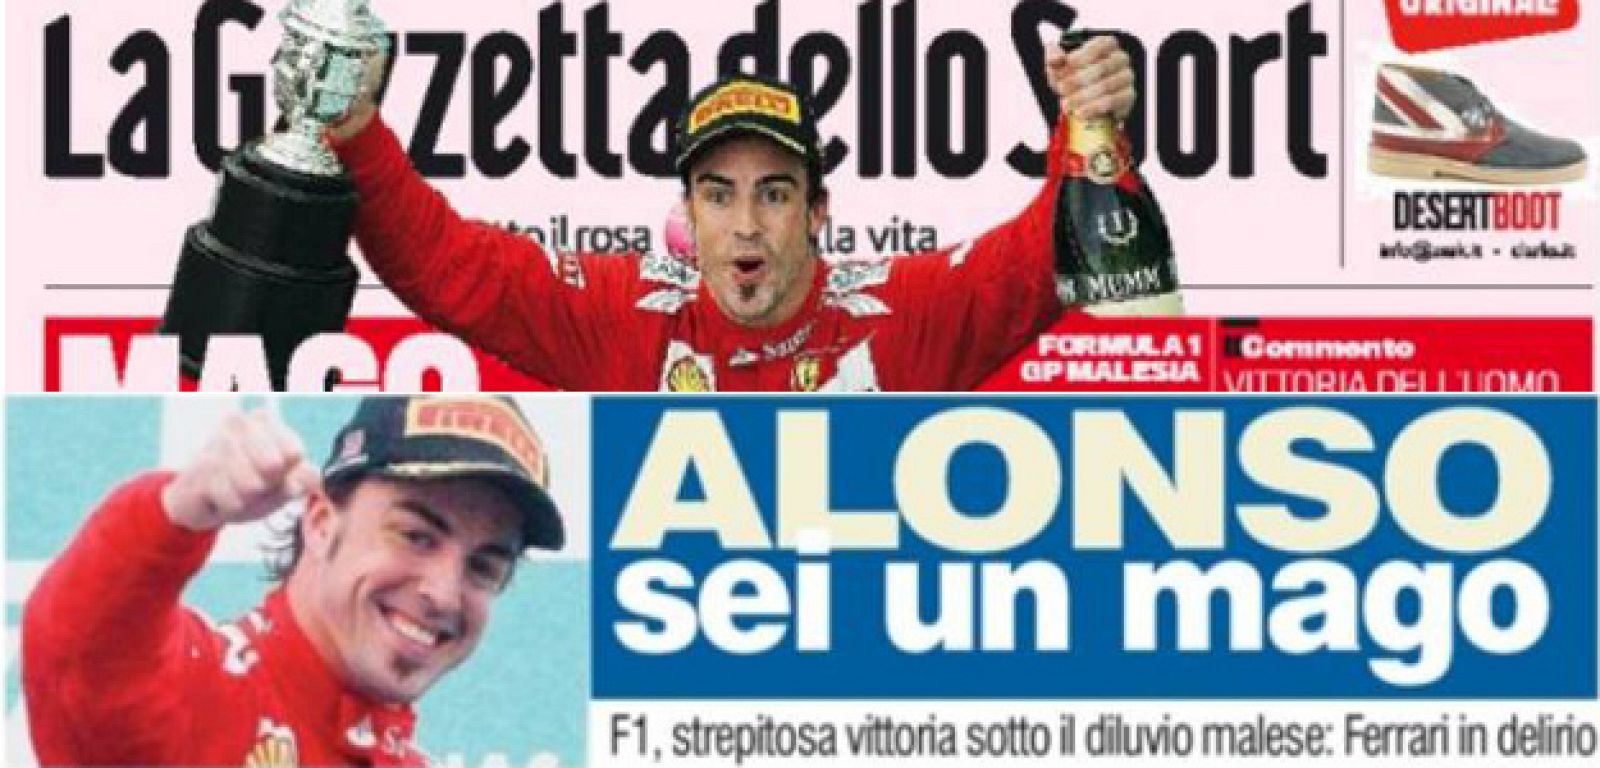 La prensa elogia a Alonso